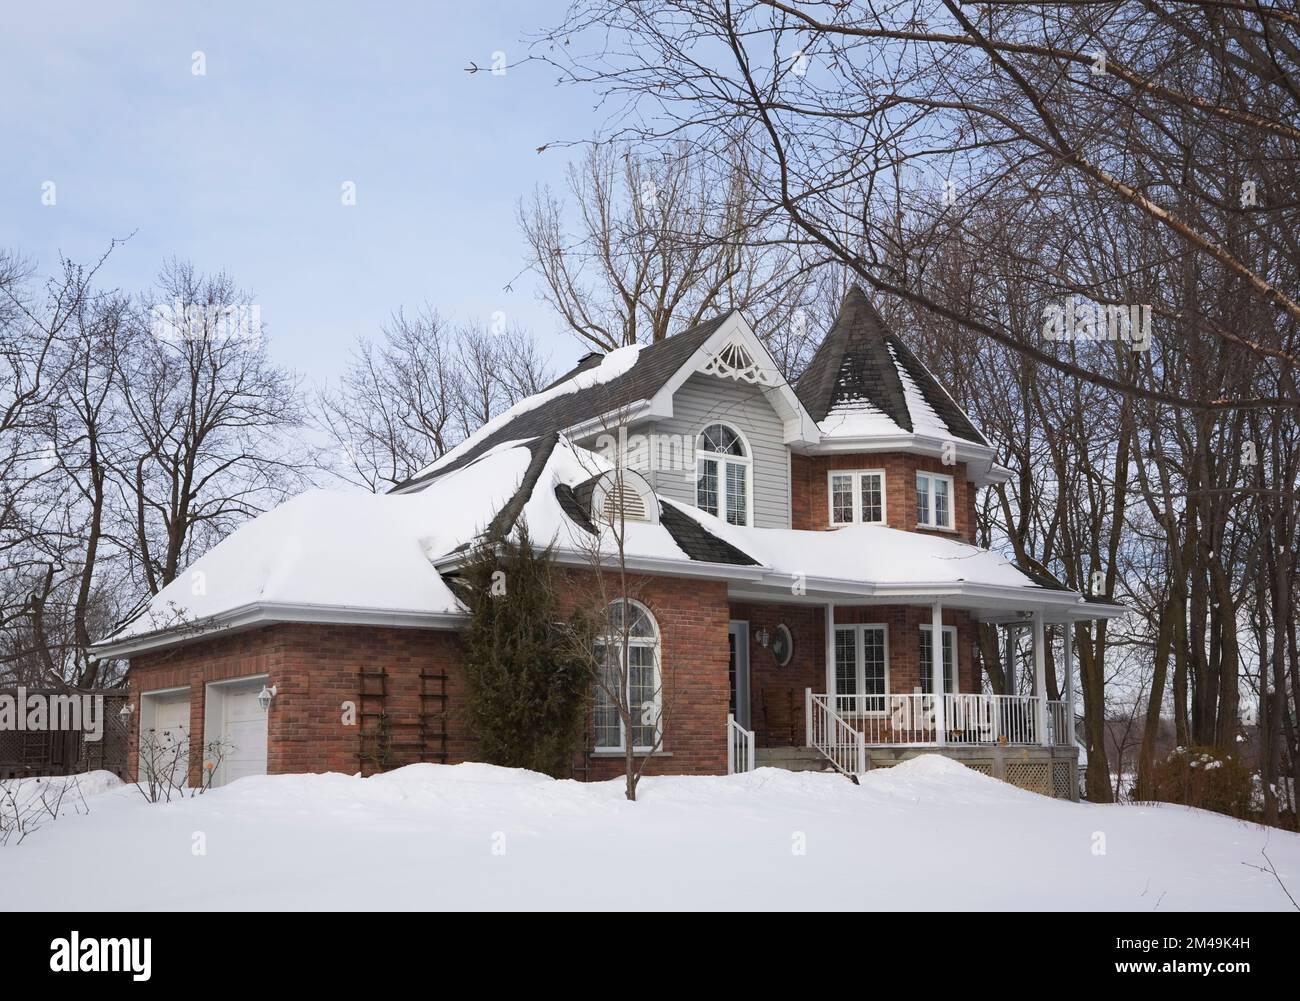 Brique rouge avec garniture grise et blanche nouvelle maison de style cottage victorien en hiver. Banque D'Images